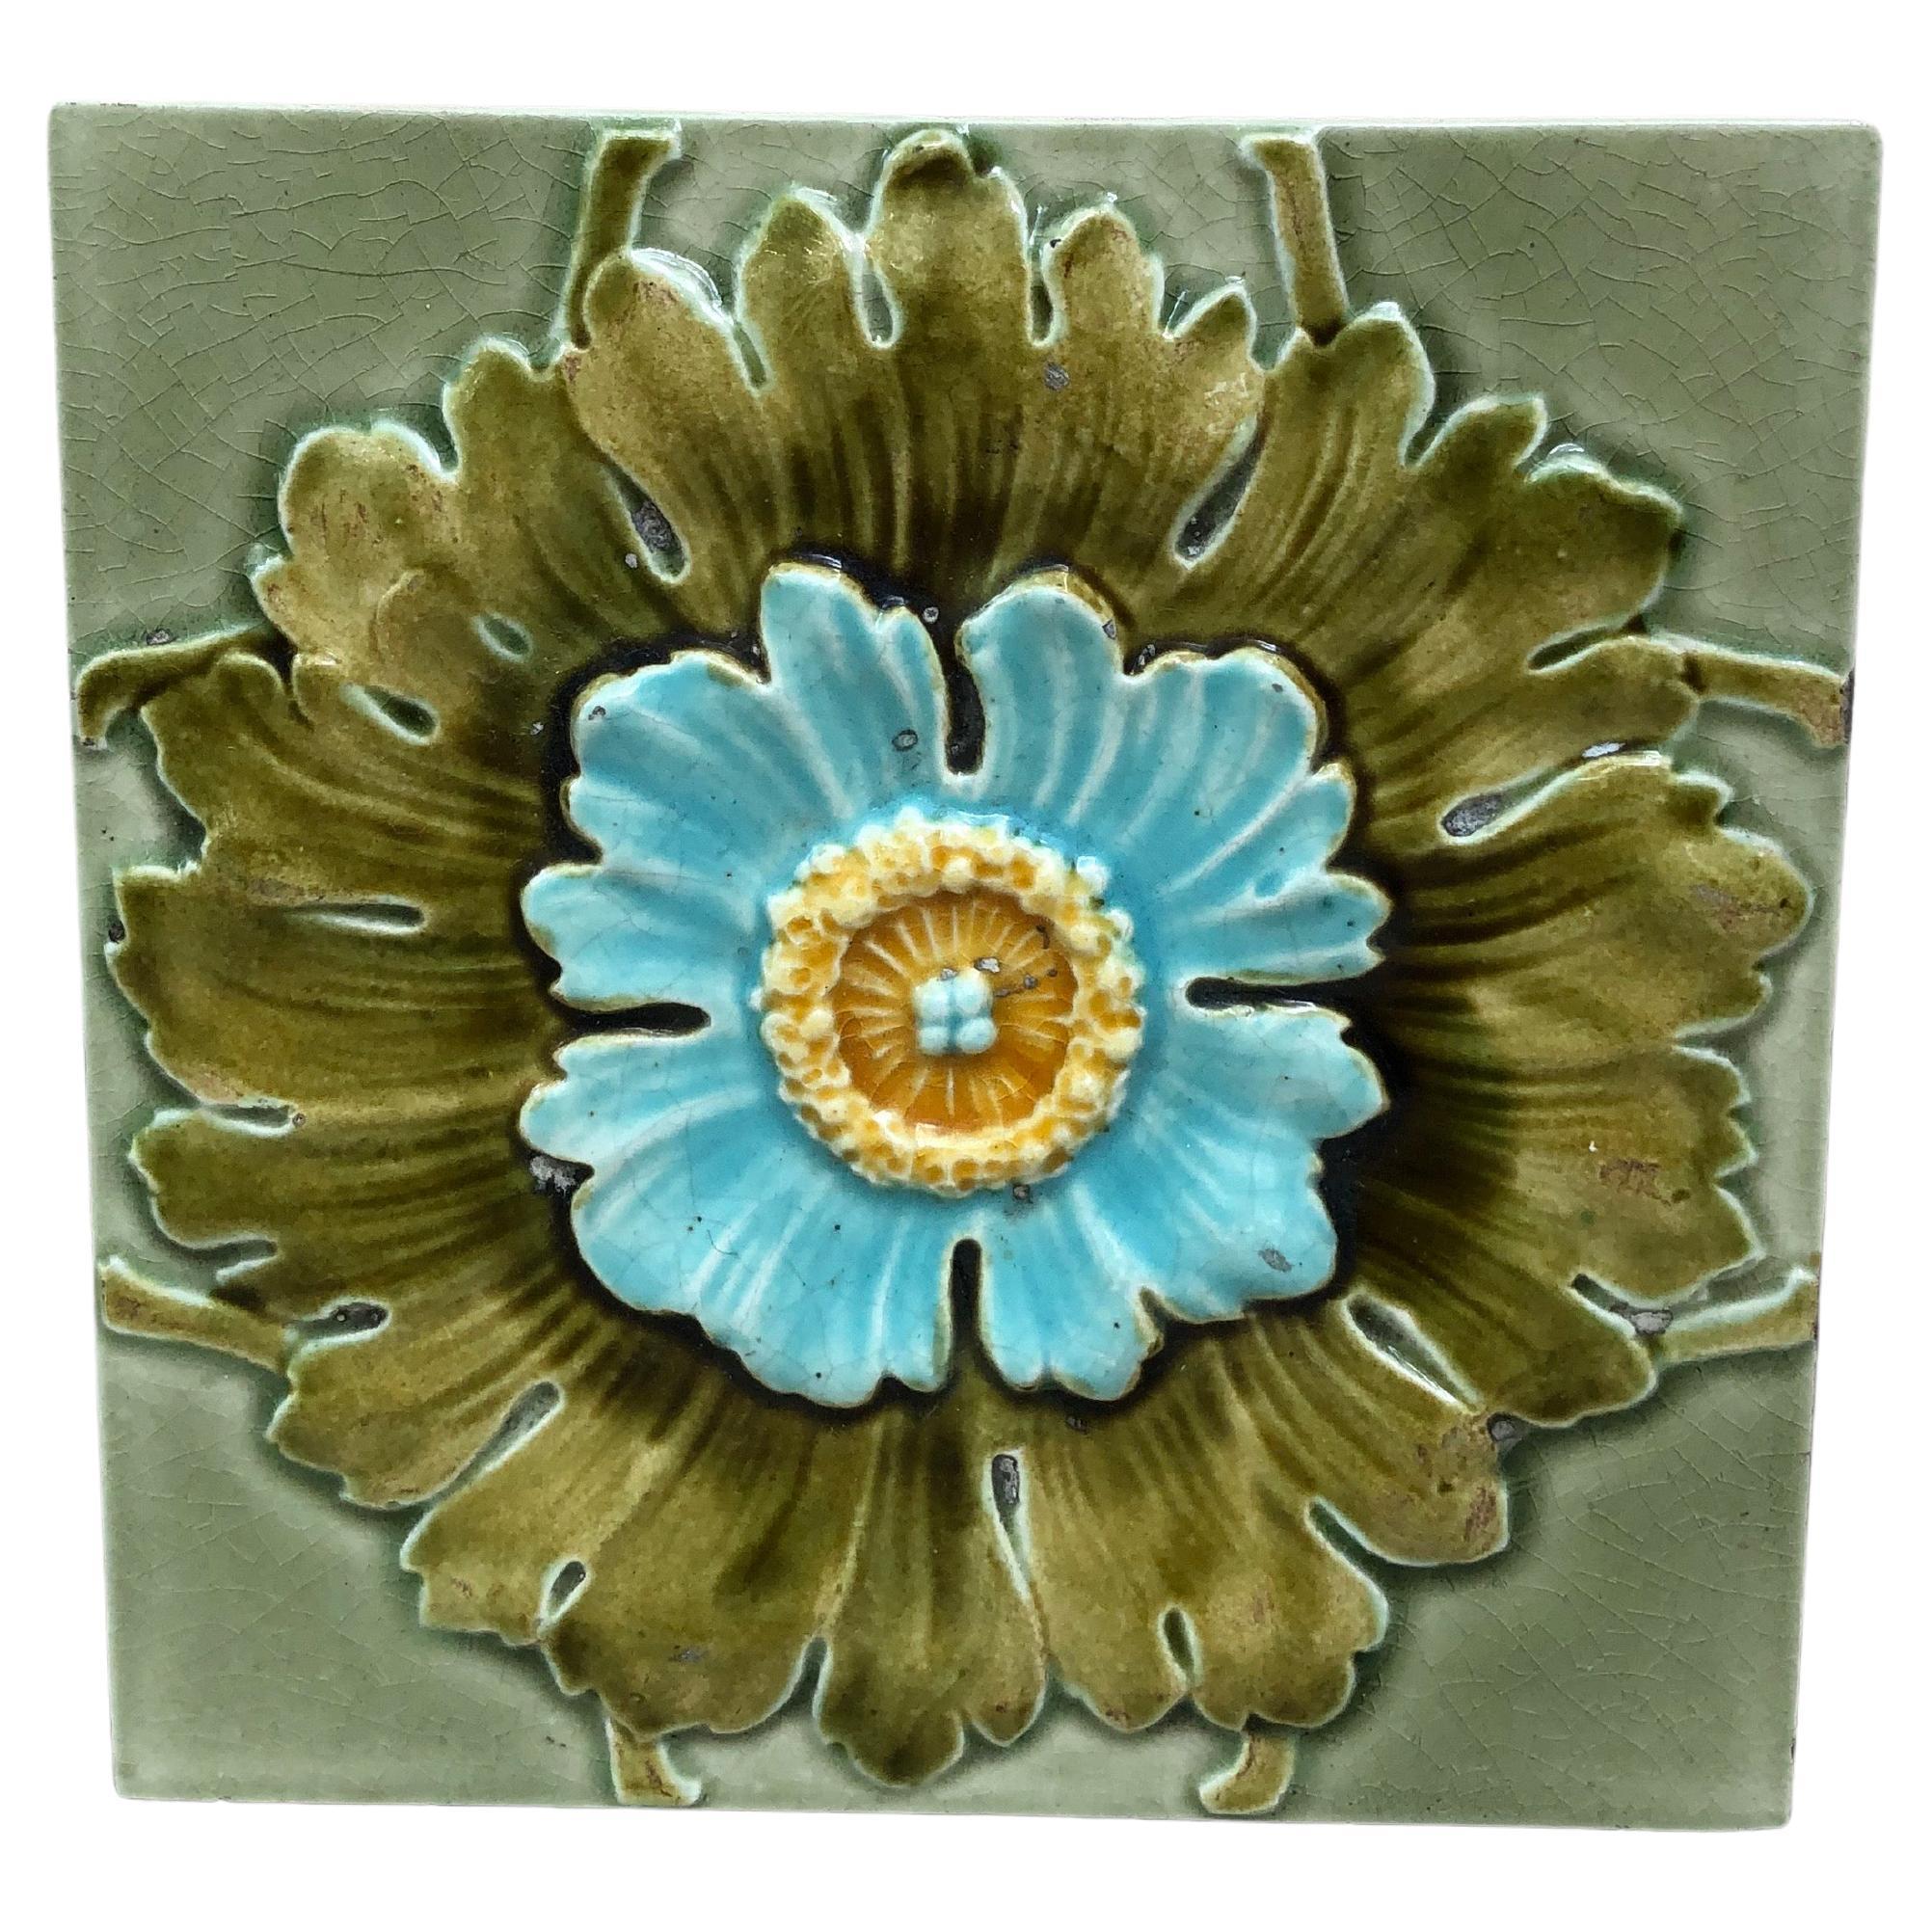 French Majolica Flower Tile, circa 1890